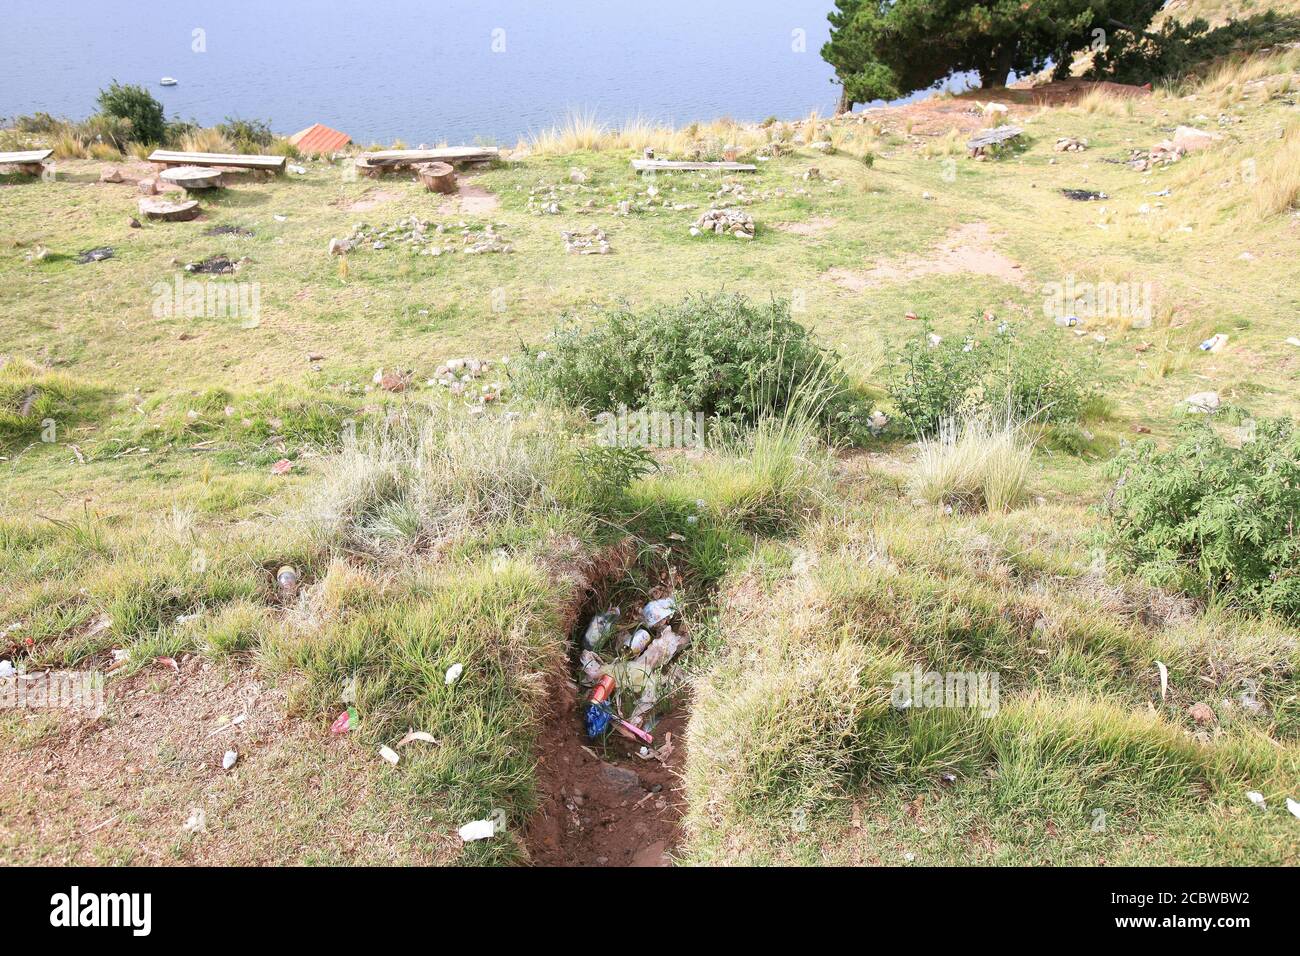 Les ordures accumulées sur le chemin du mont Calvario Calvary), un lieu religieux et point de vue de la ville de Copacabana et du lac Titicaca, en Bolivie. Banque D'Images